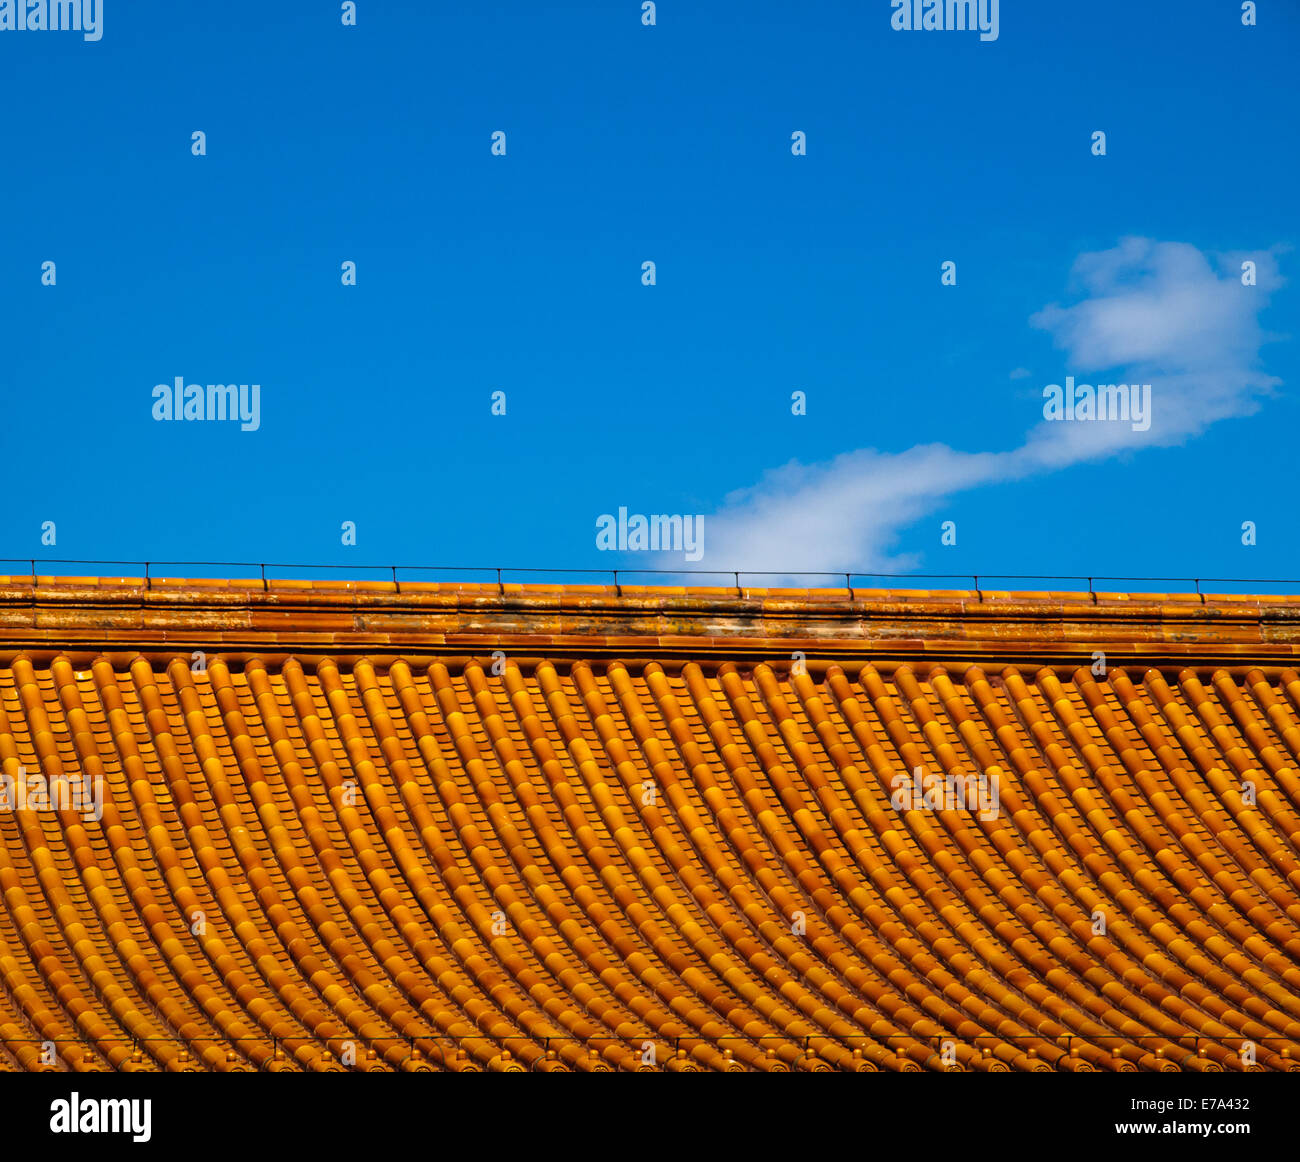 Arancione, piastrellate tetti cinesi nella città proibita a Pechino, Cina Foto Stock